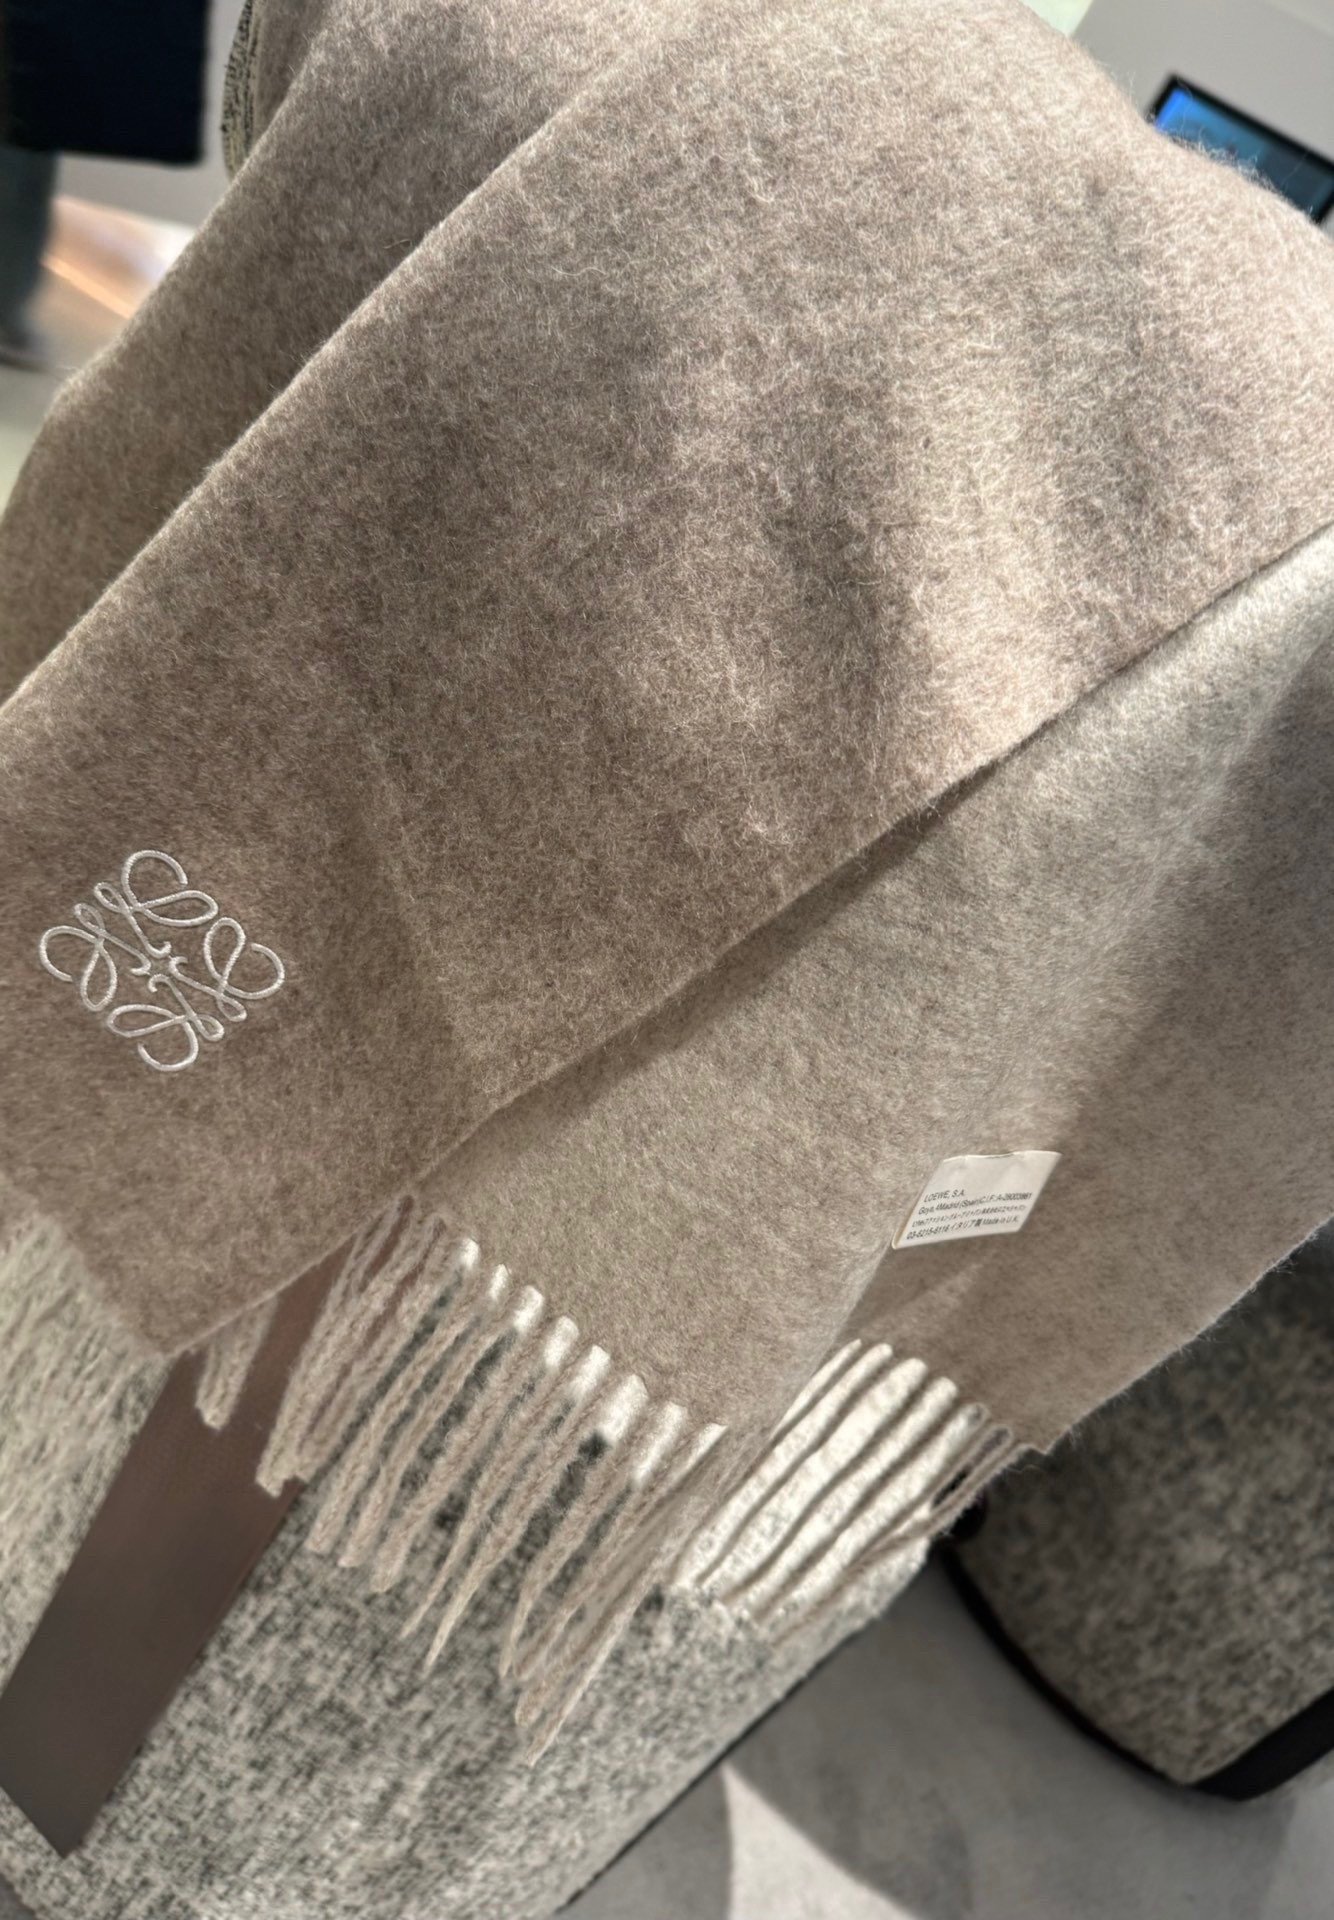 P罗意威2023巴黎时装展商务男士女士通用双面羊绒披肩代工厂臻选上乘的超细羊绒纤维进行纯手工精梳处理耗时